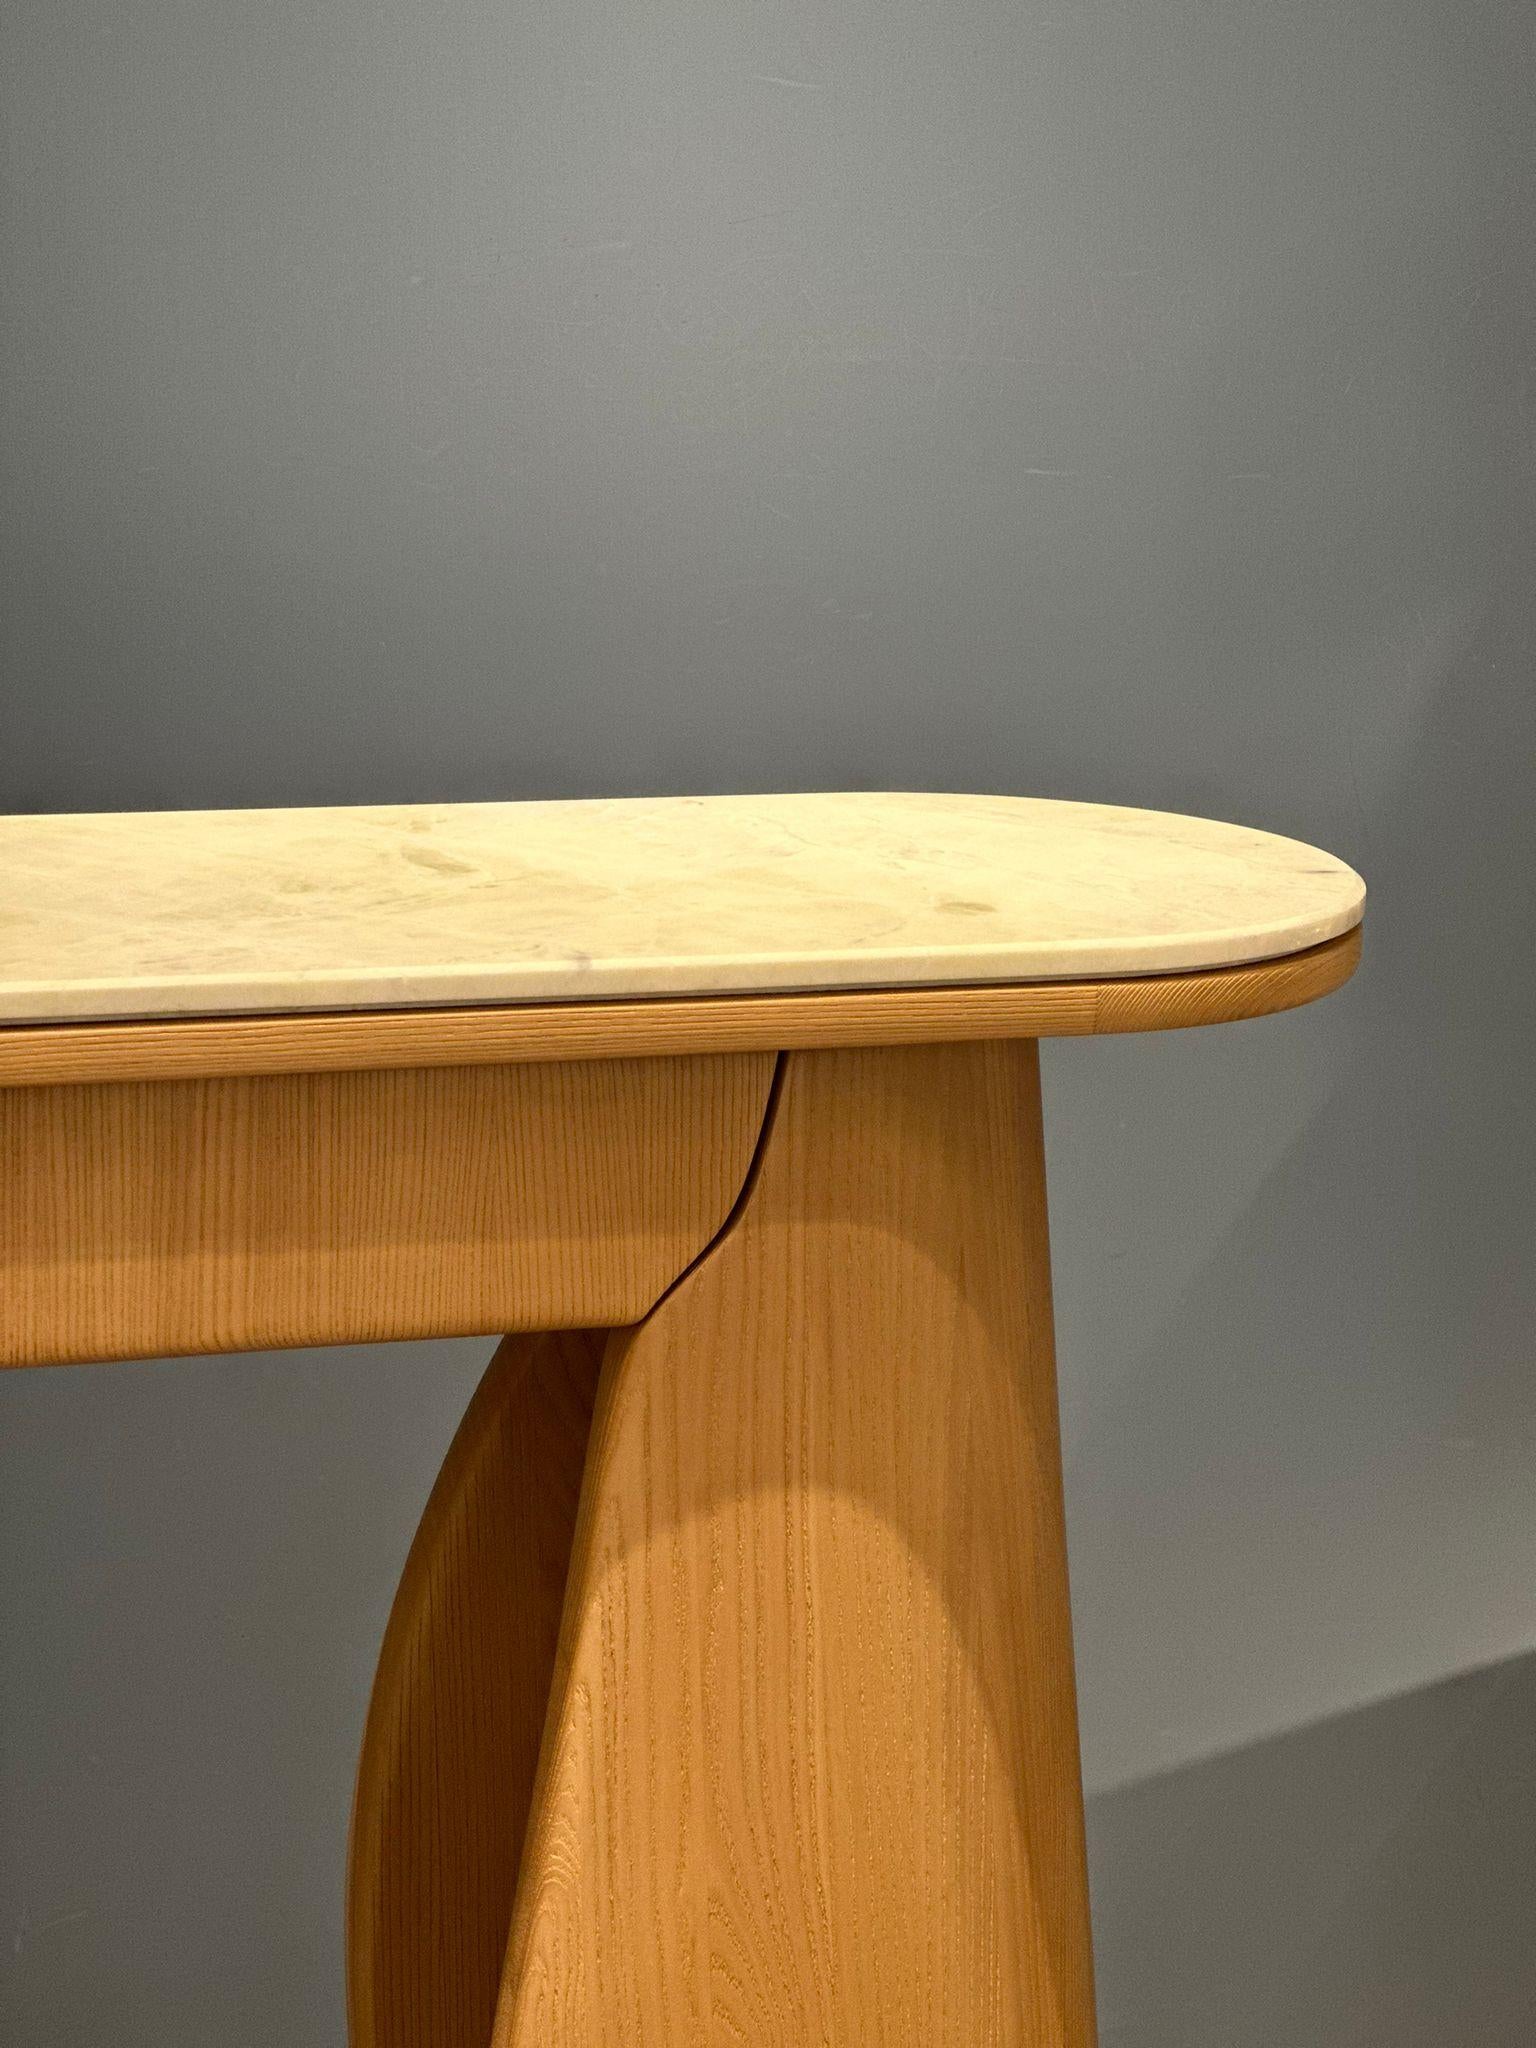 Description : Table console Puzzle
Couleur : marron
Dimensions : 120 x 31 x 90H cm
Matériau : Bois massif, marbre